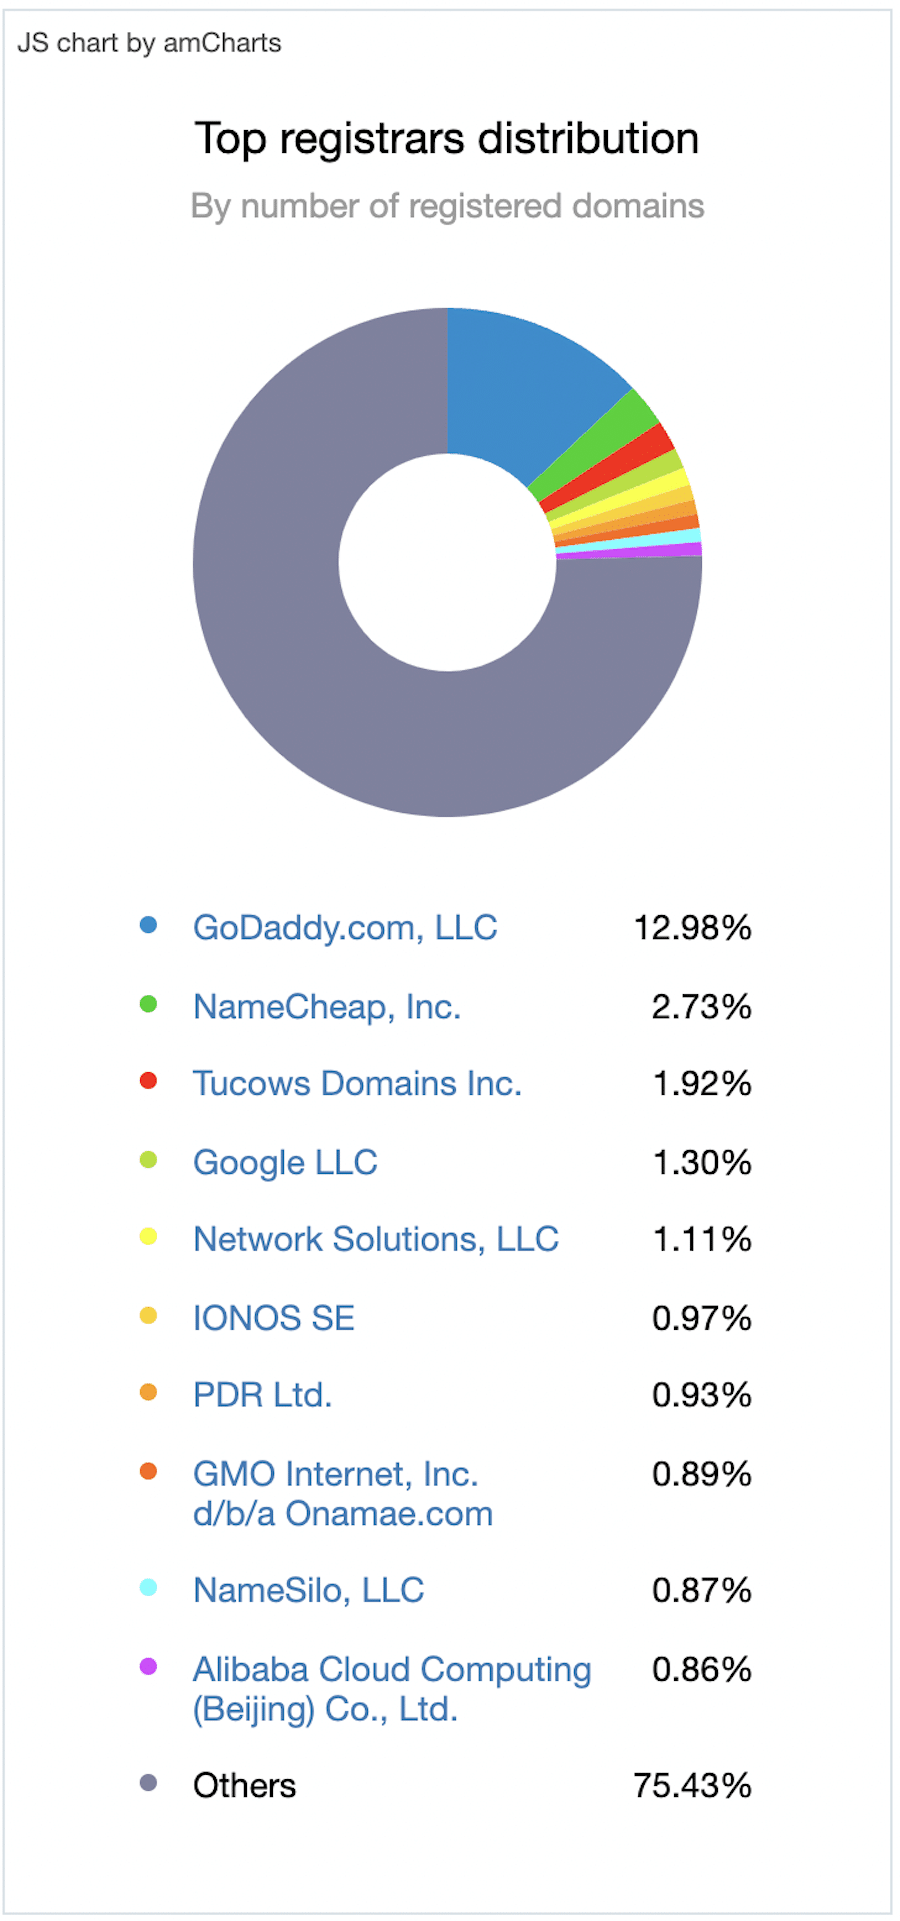 Domeinregistratie per bedrijf. GoDaddy heeft het grootste marktaandeel, maar veel websites zijn onafhankelijk geregistreerd. 